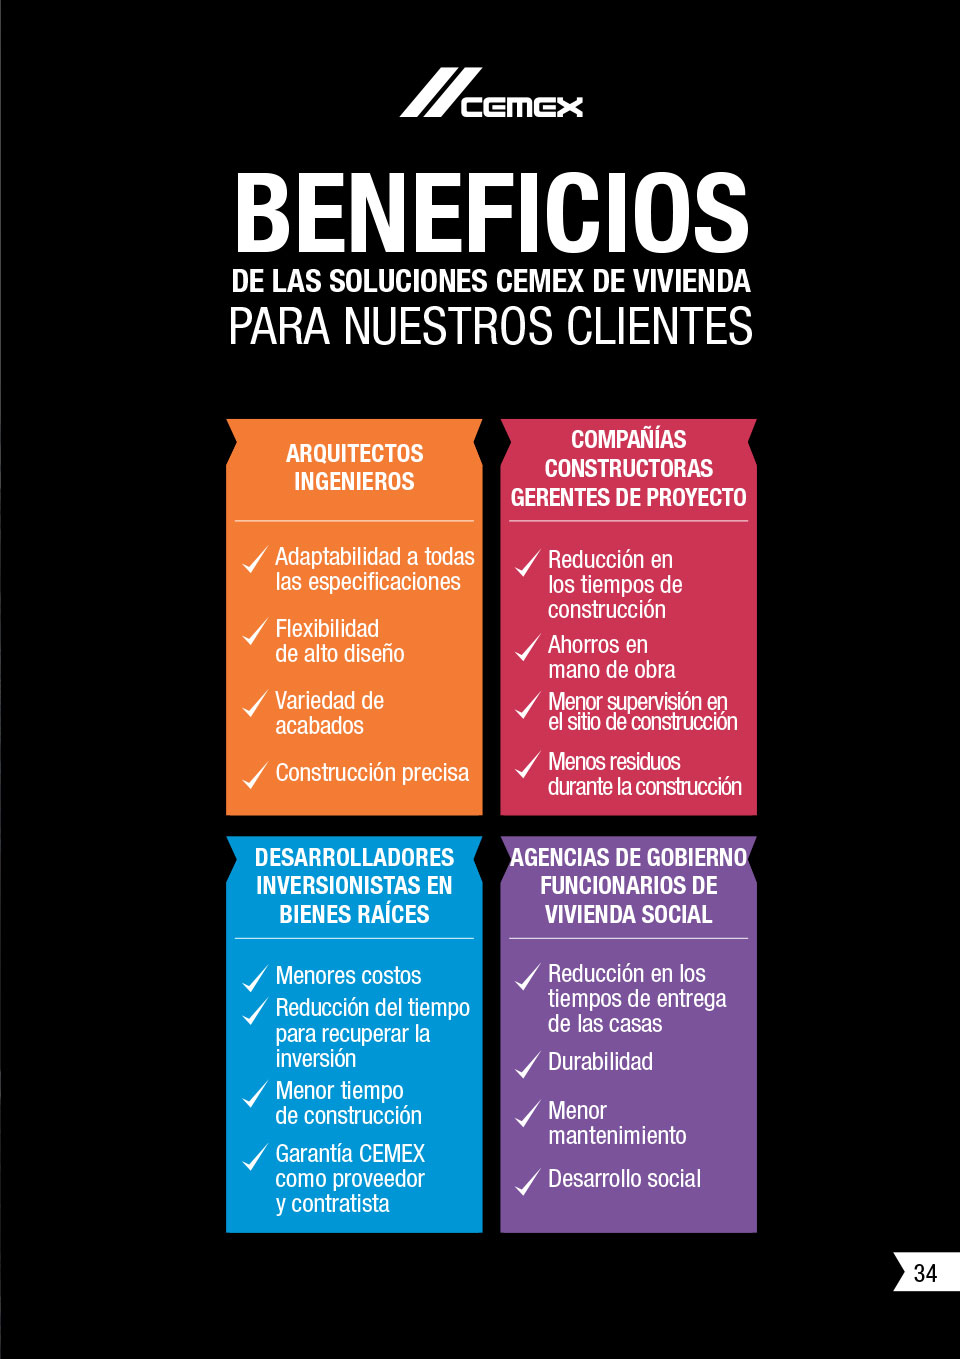 la imagen muestra los diferentes beneficios que CEMEX ofrece a sus clientes